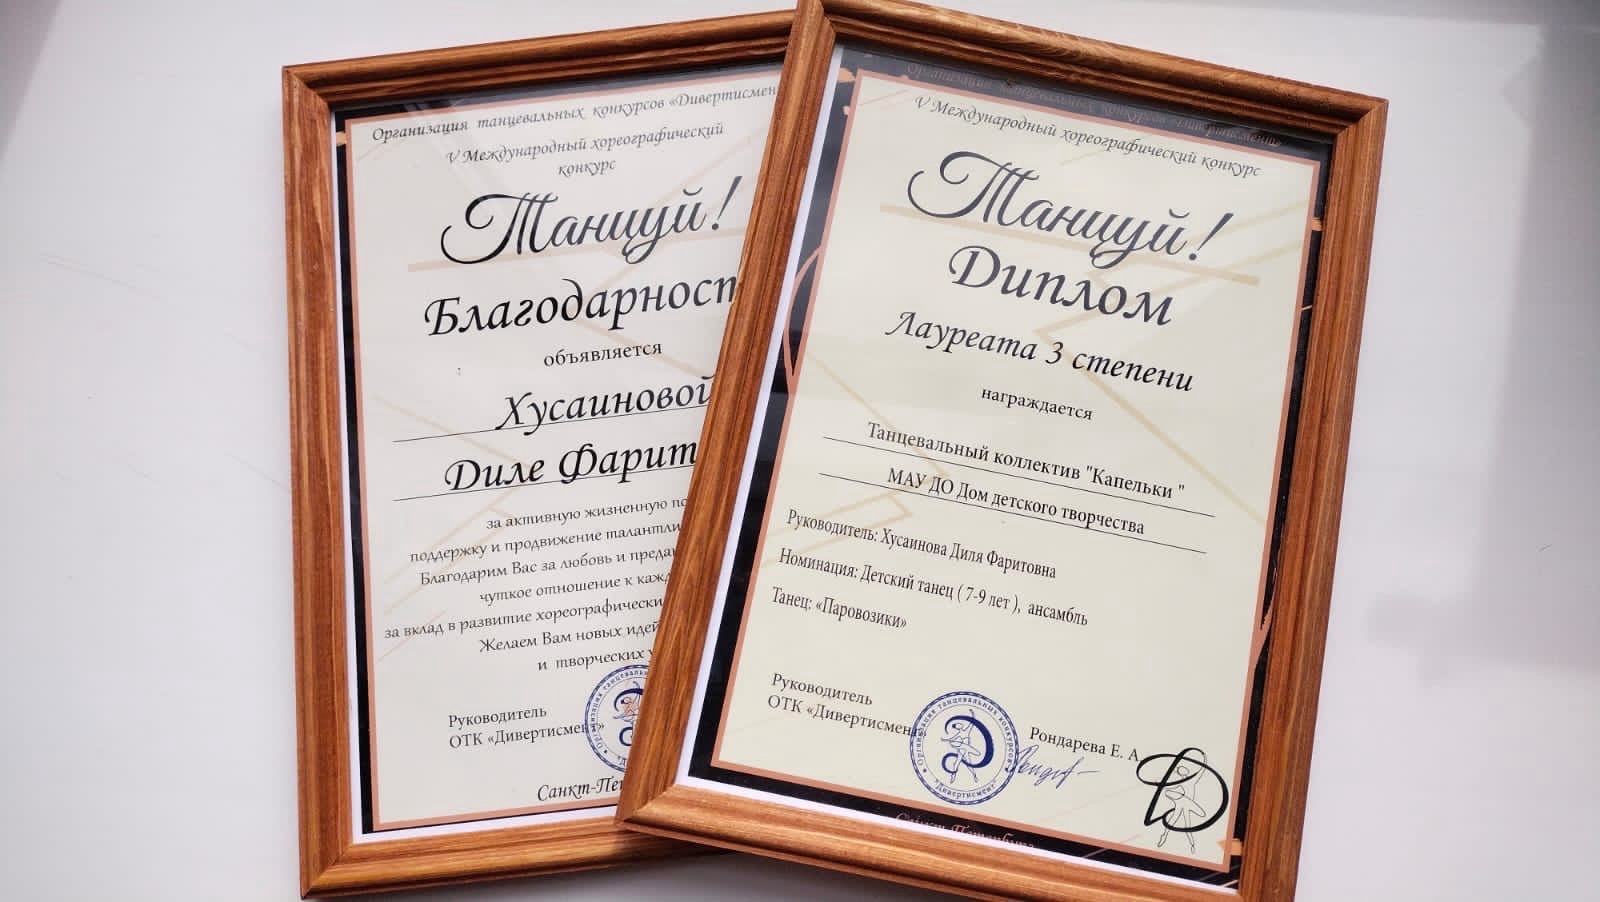 Поздравляем танцевальный коллектив ДДТ «Капельки» с дипломами лауреата 3 степени